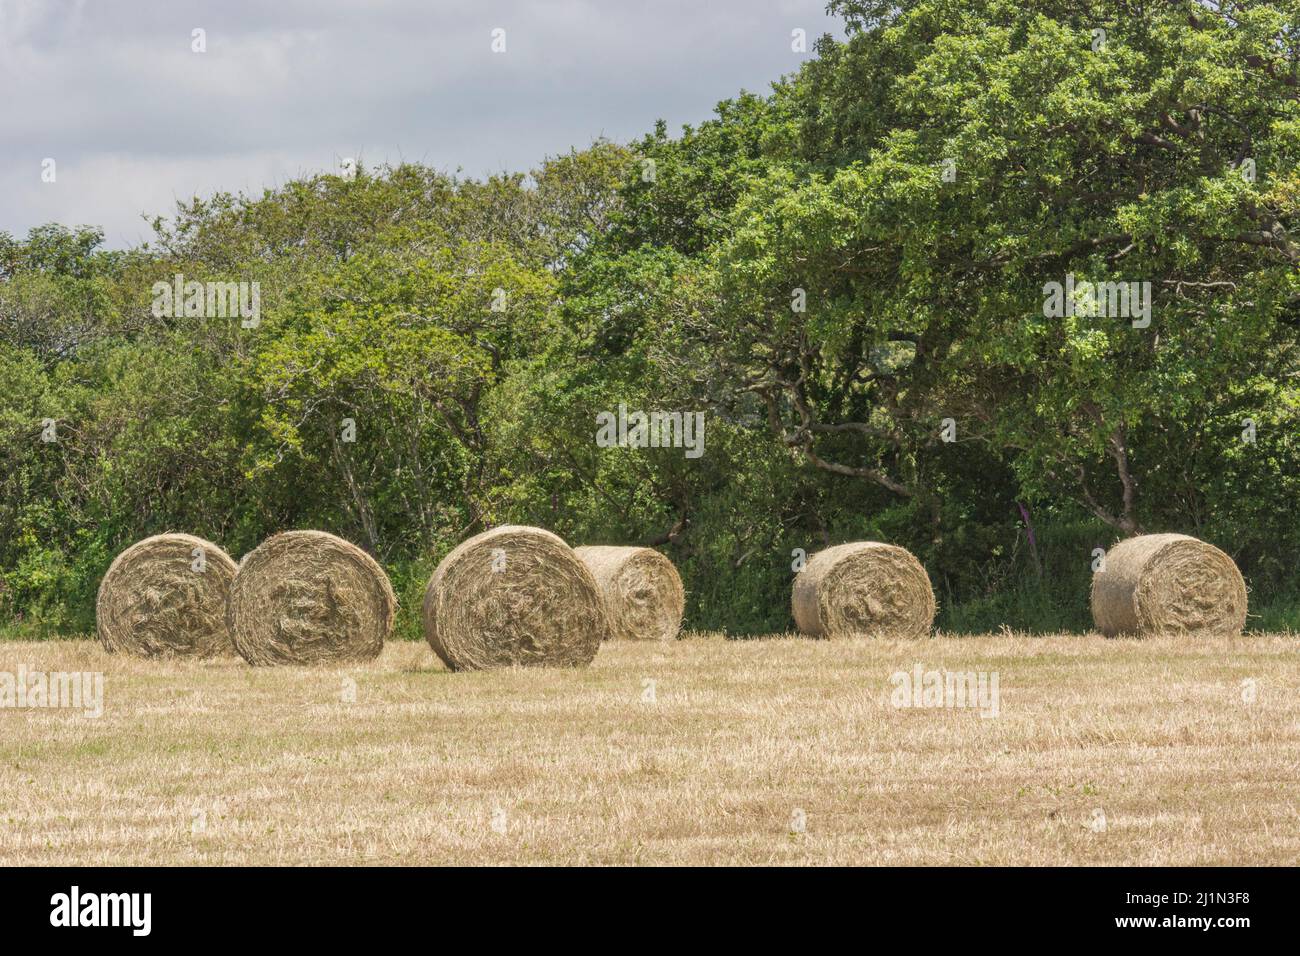 Green Fields of England concept. Balles rondes de paille de foin (par opposition à celles de céréales). Pour l'agriculture et l'agriculture au Royaume-Uni. Banque D'Images